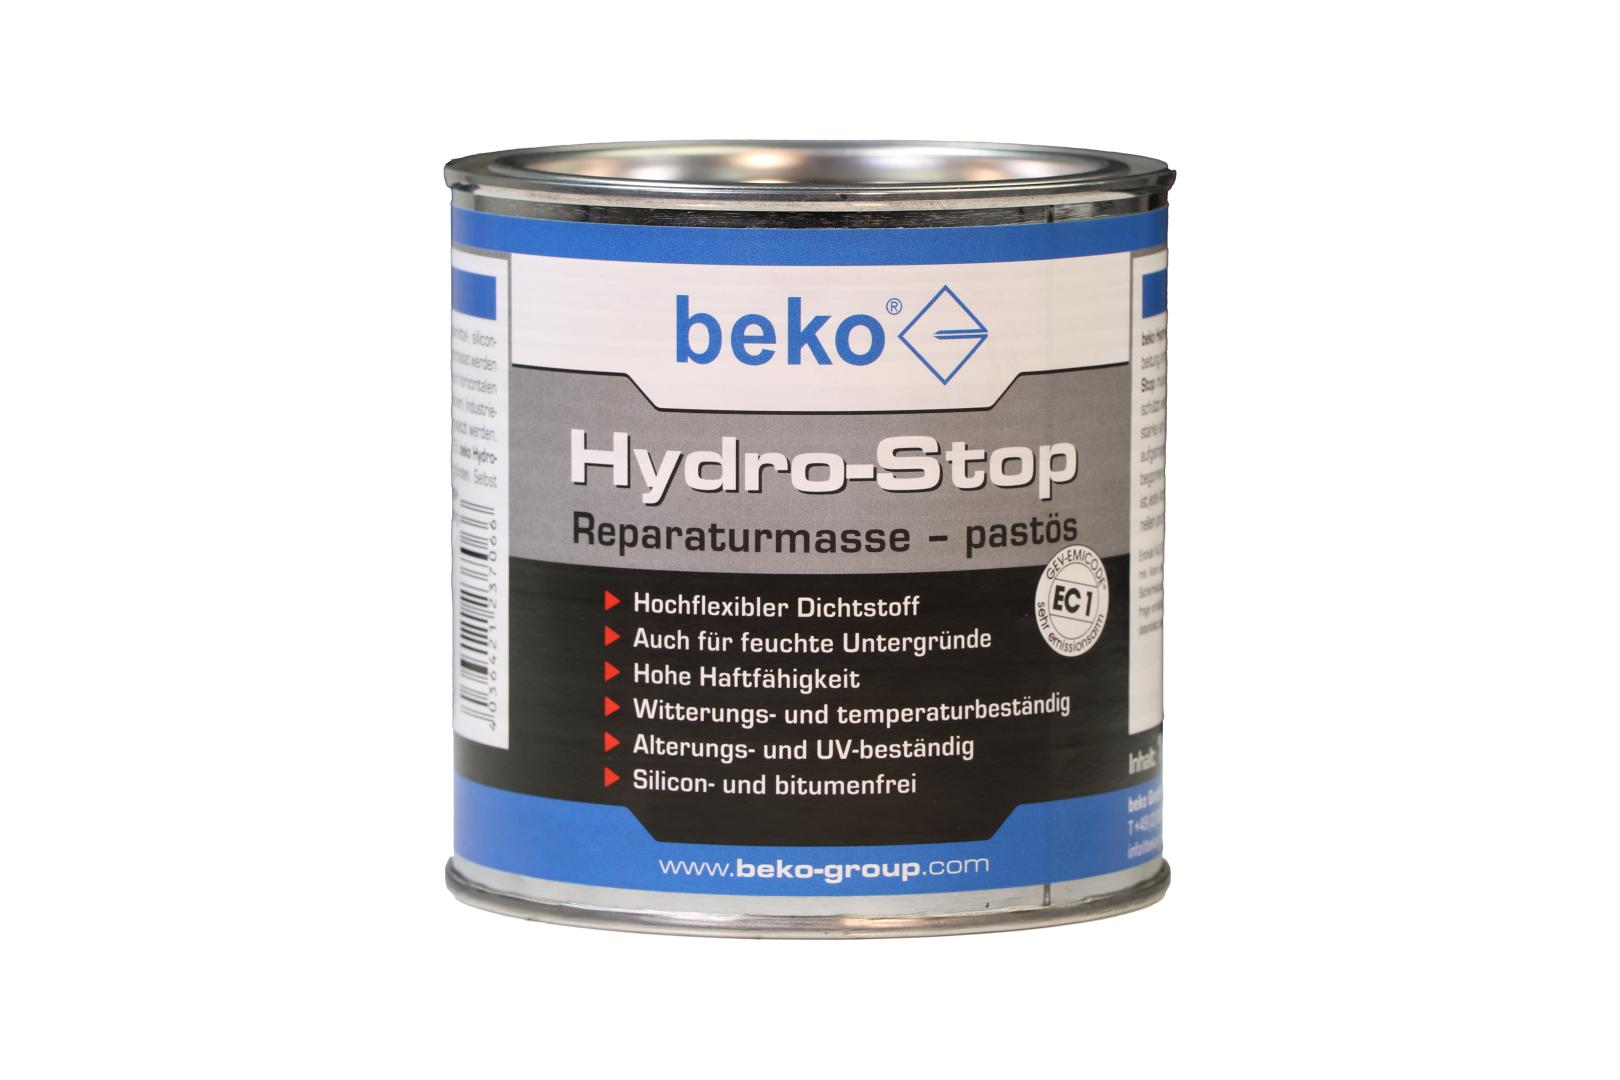 beko Hydro-Stop, Reparaturmasse, pastös, 1 kg